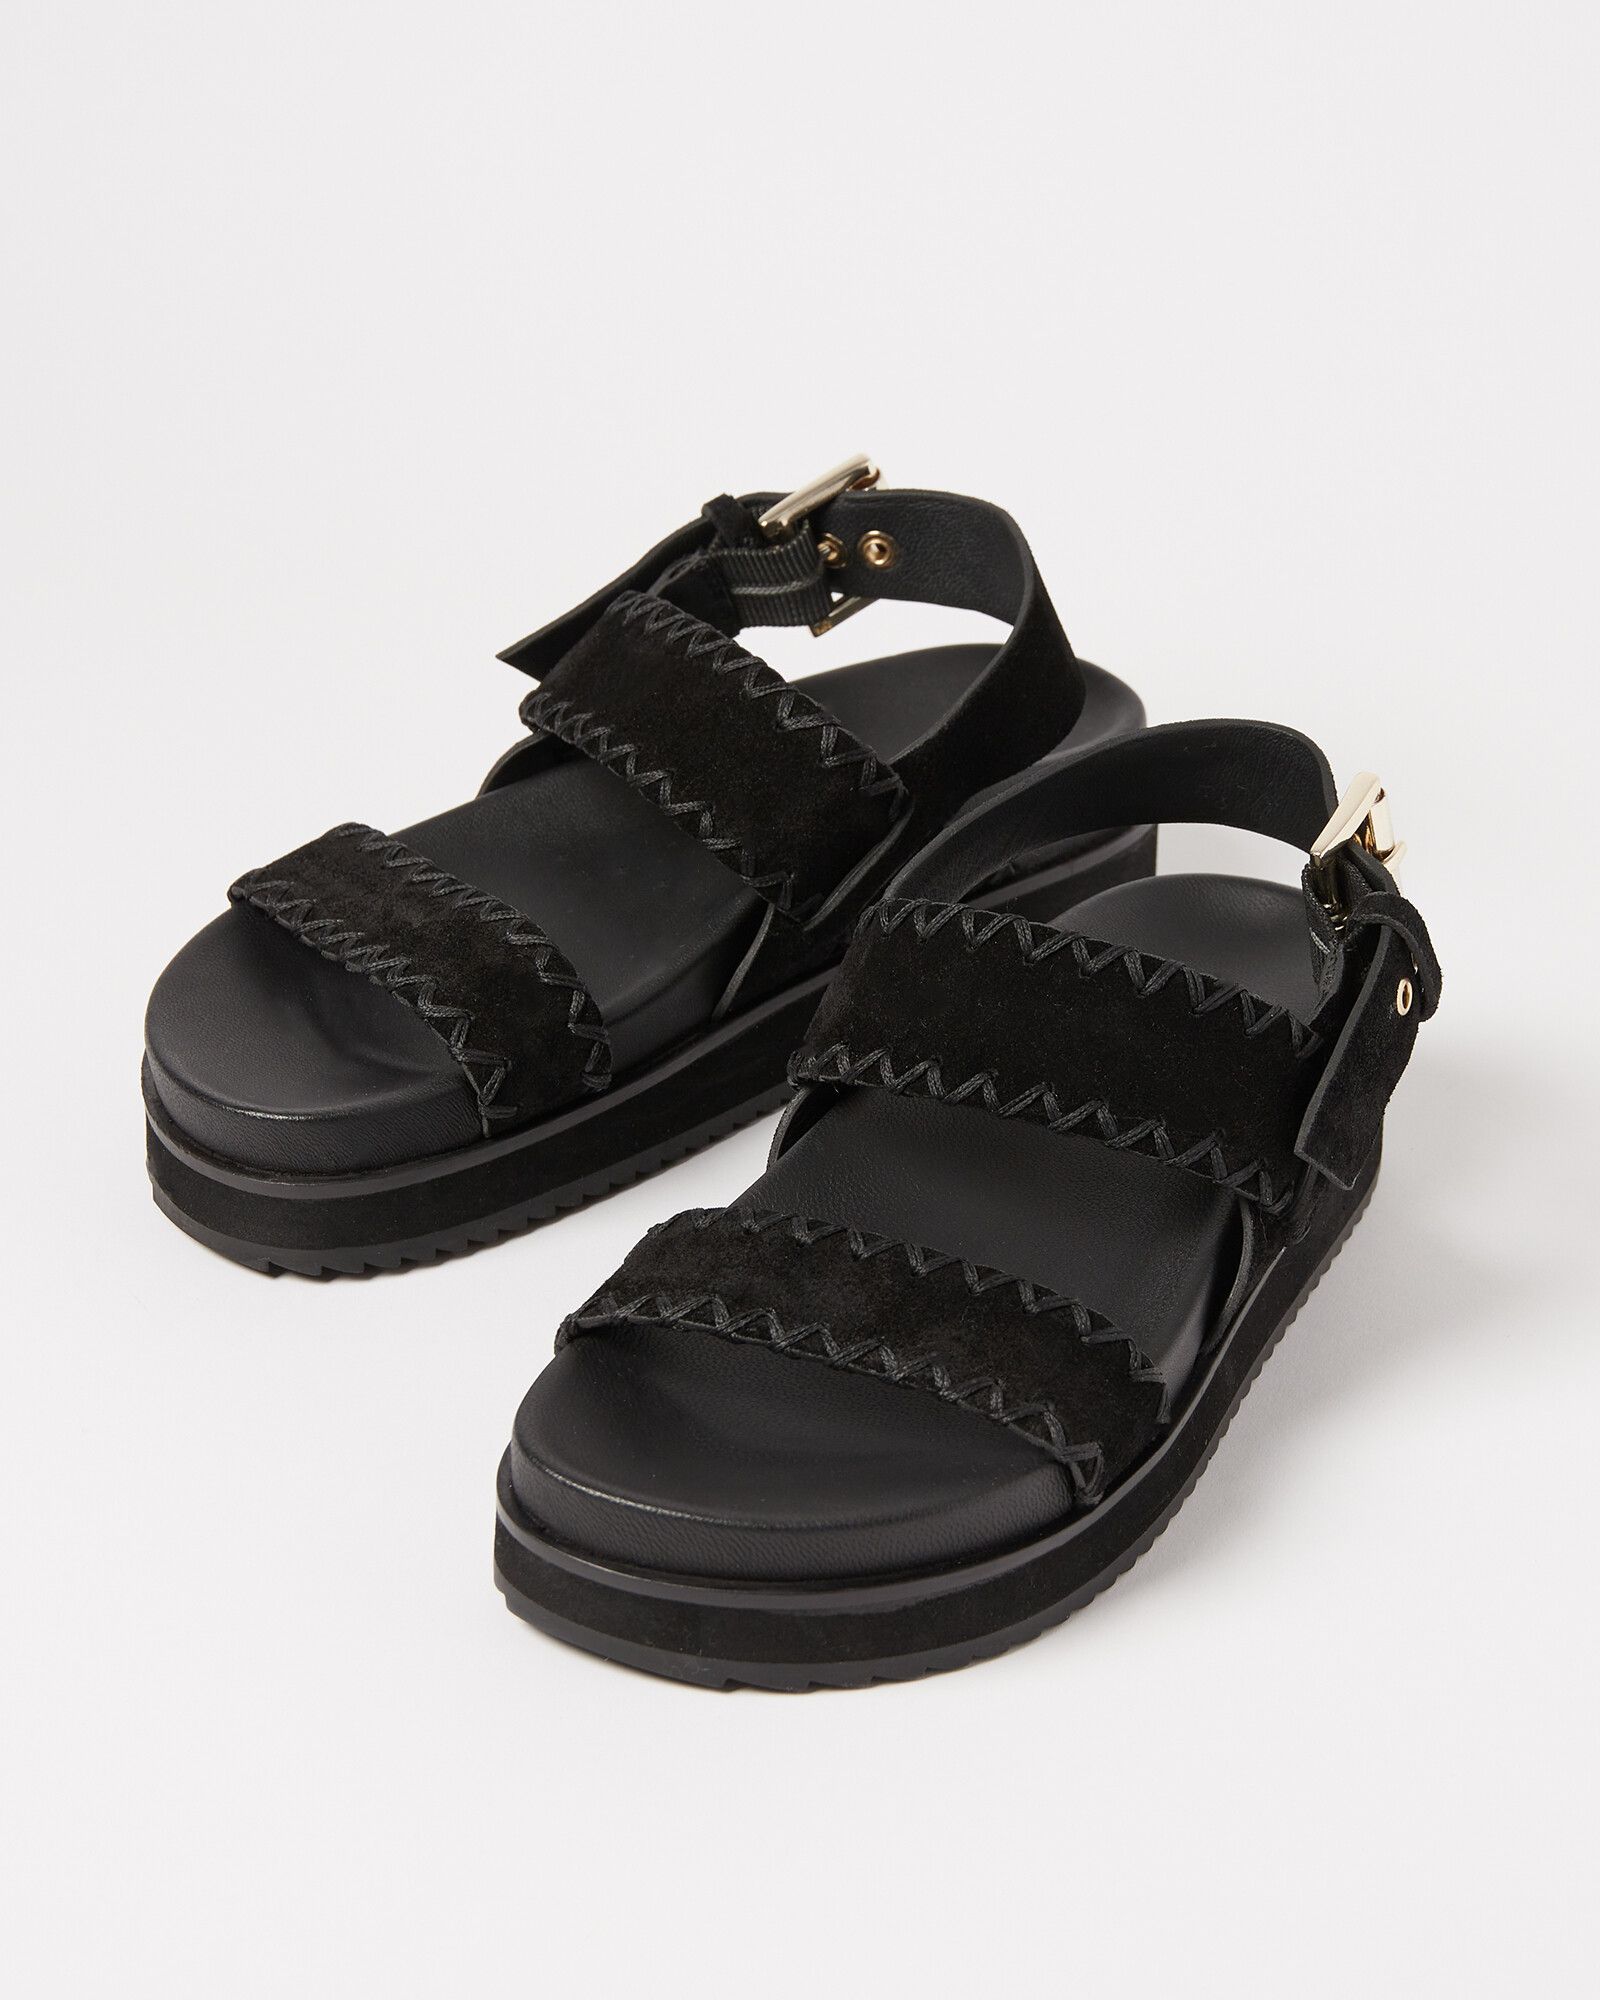 Whipstitch Black Suede Leather Flatform Sandals | Oliver Bonas